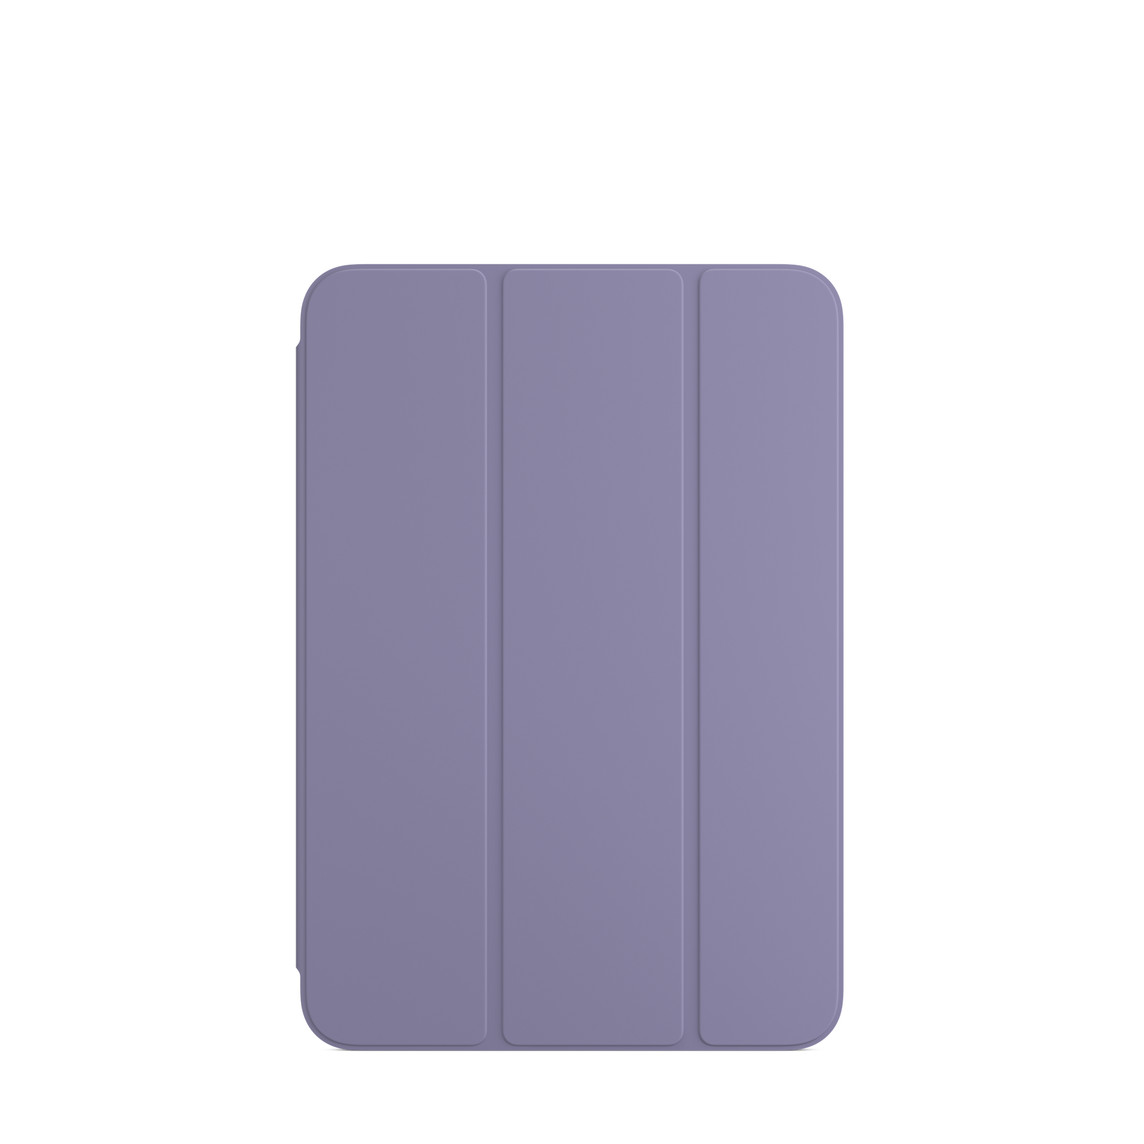 Smart Folio pour iPad mini (6ᵉ génération) en coloris Lavande anglaise.